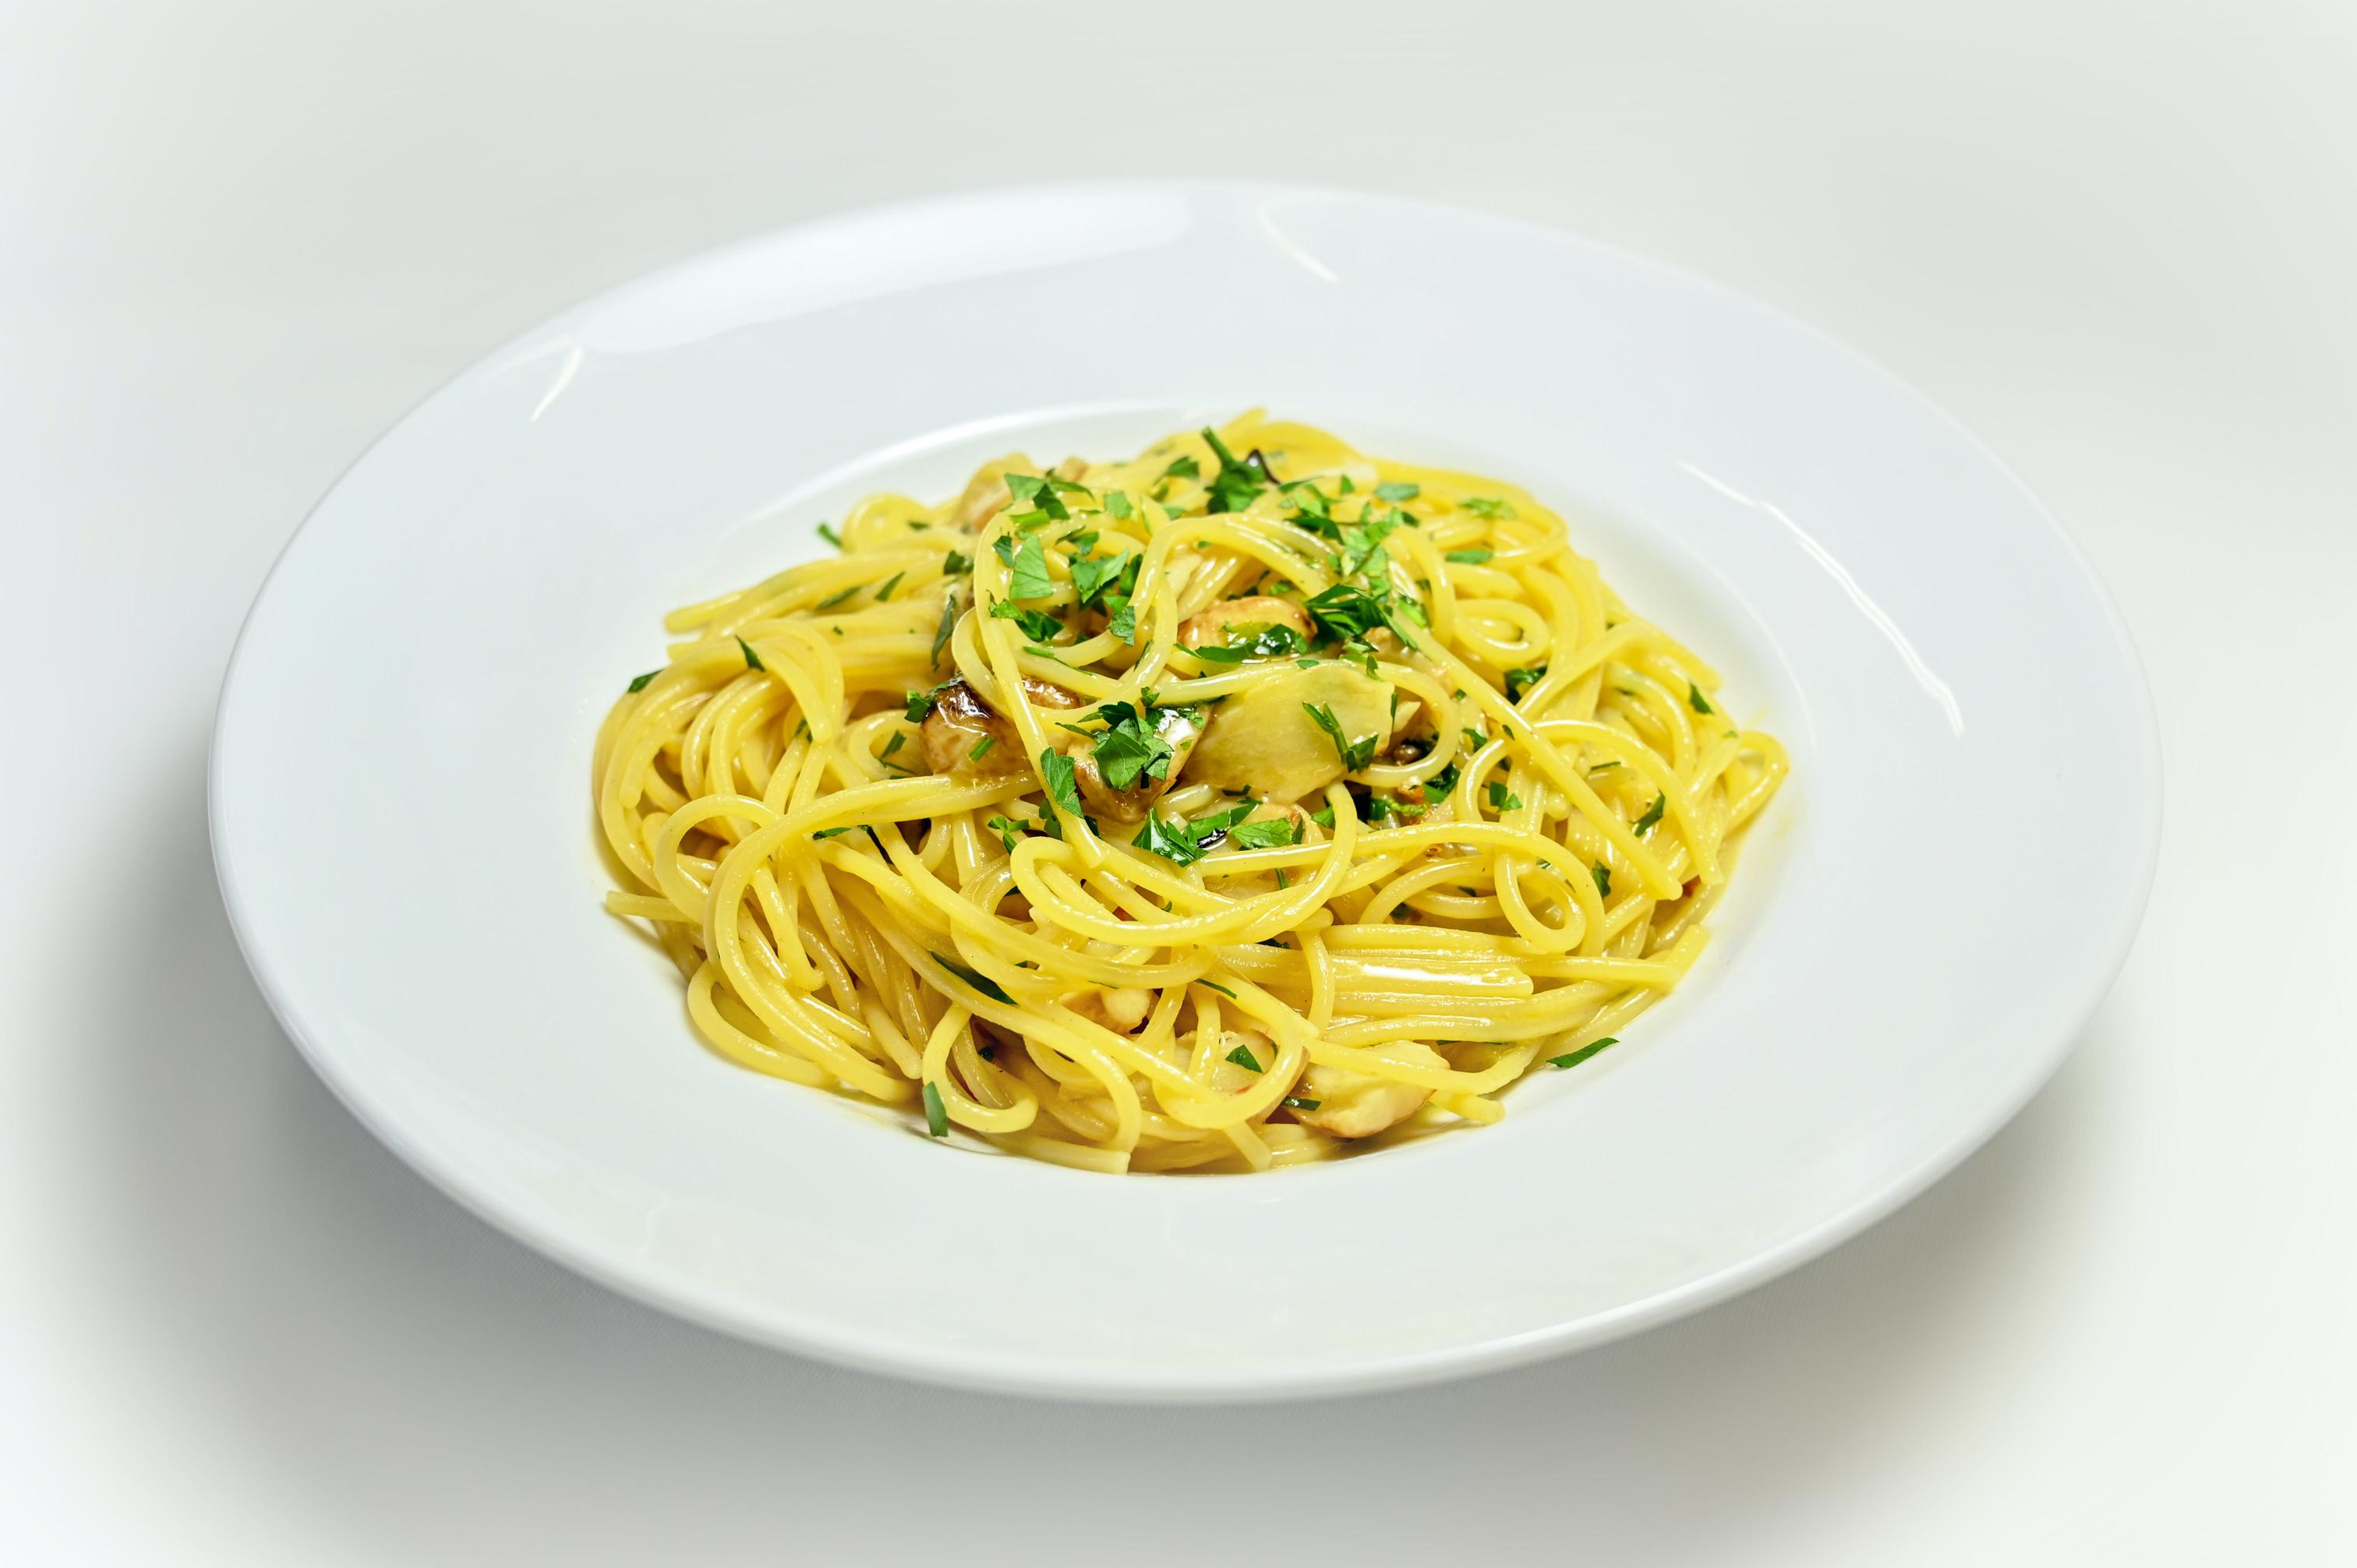 Historia i pochodzenie spaghetti aglio, olio e peperoncino